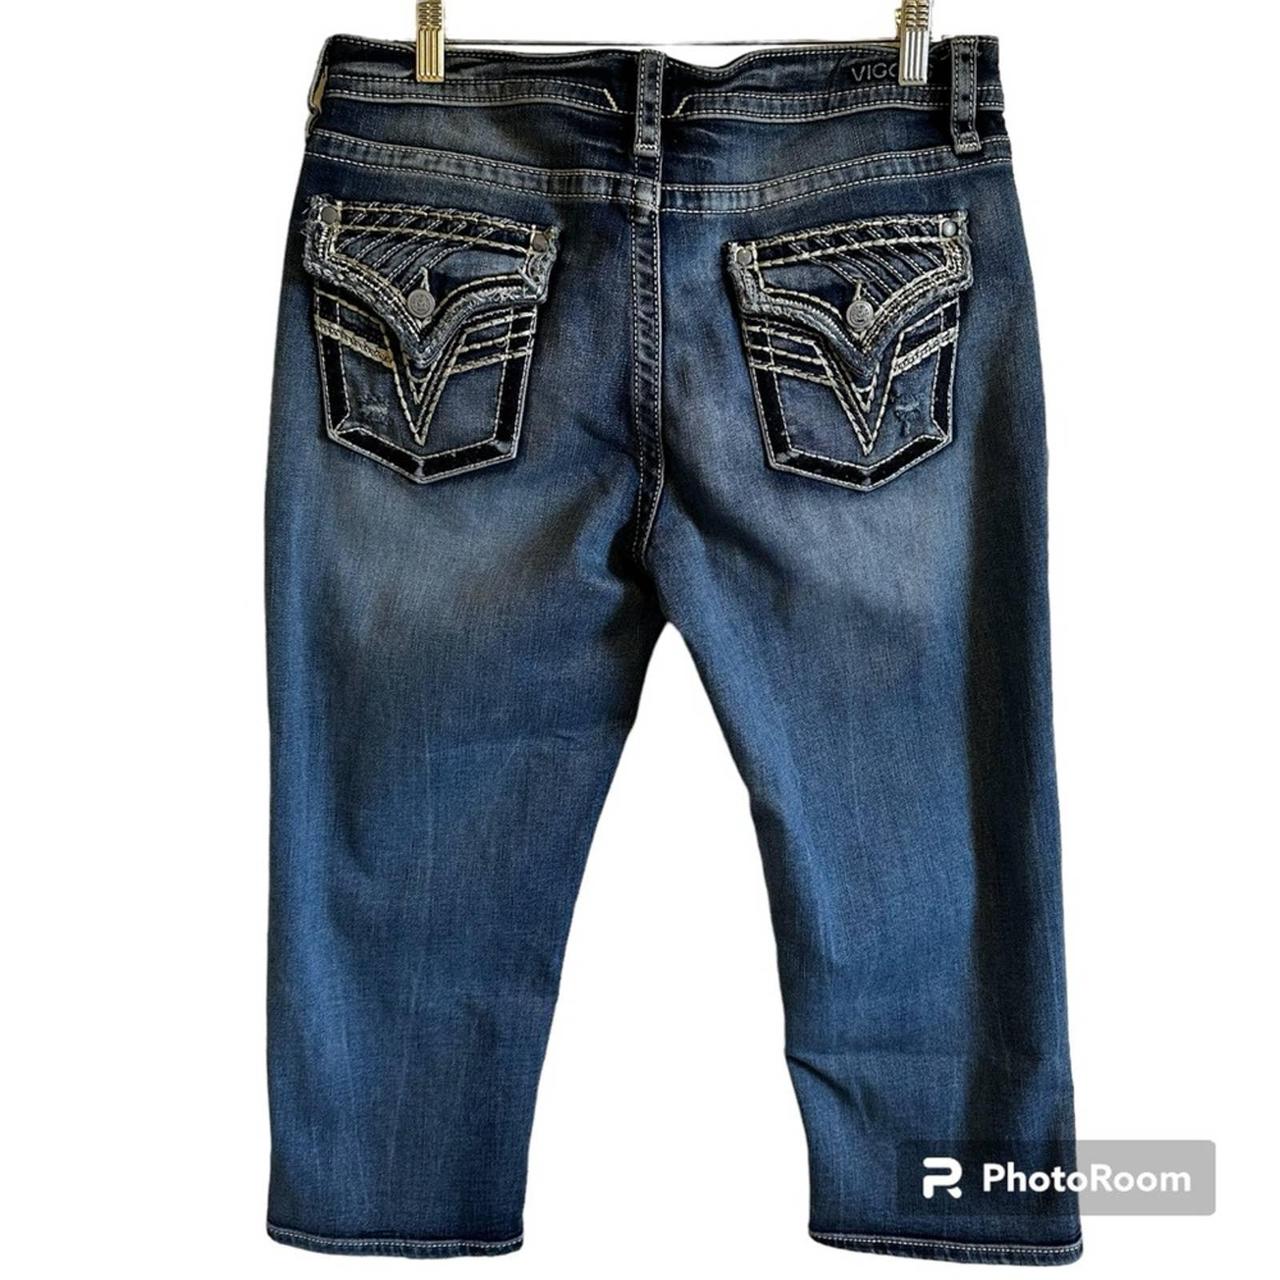 Vigoss women's jeans capris size 12 EUC - Depop